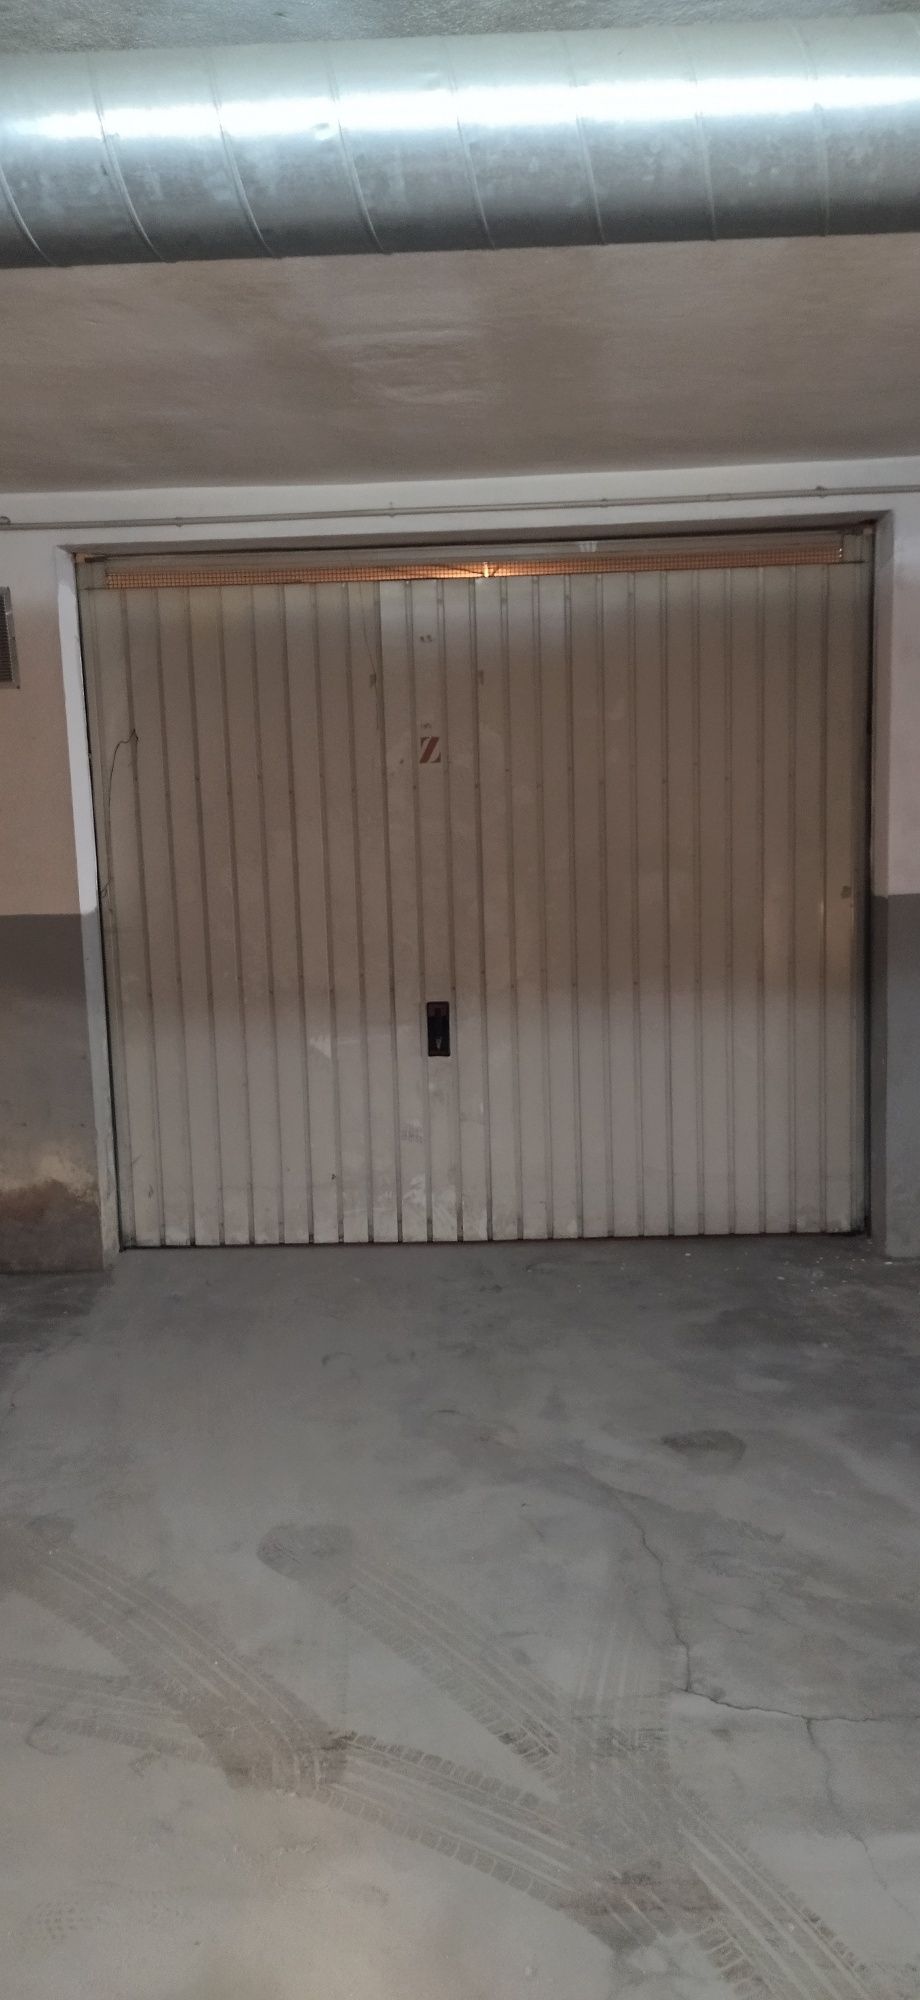 Espaçosa Garagem Box para arrendamento no centro de Ermesinde

**Espaç